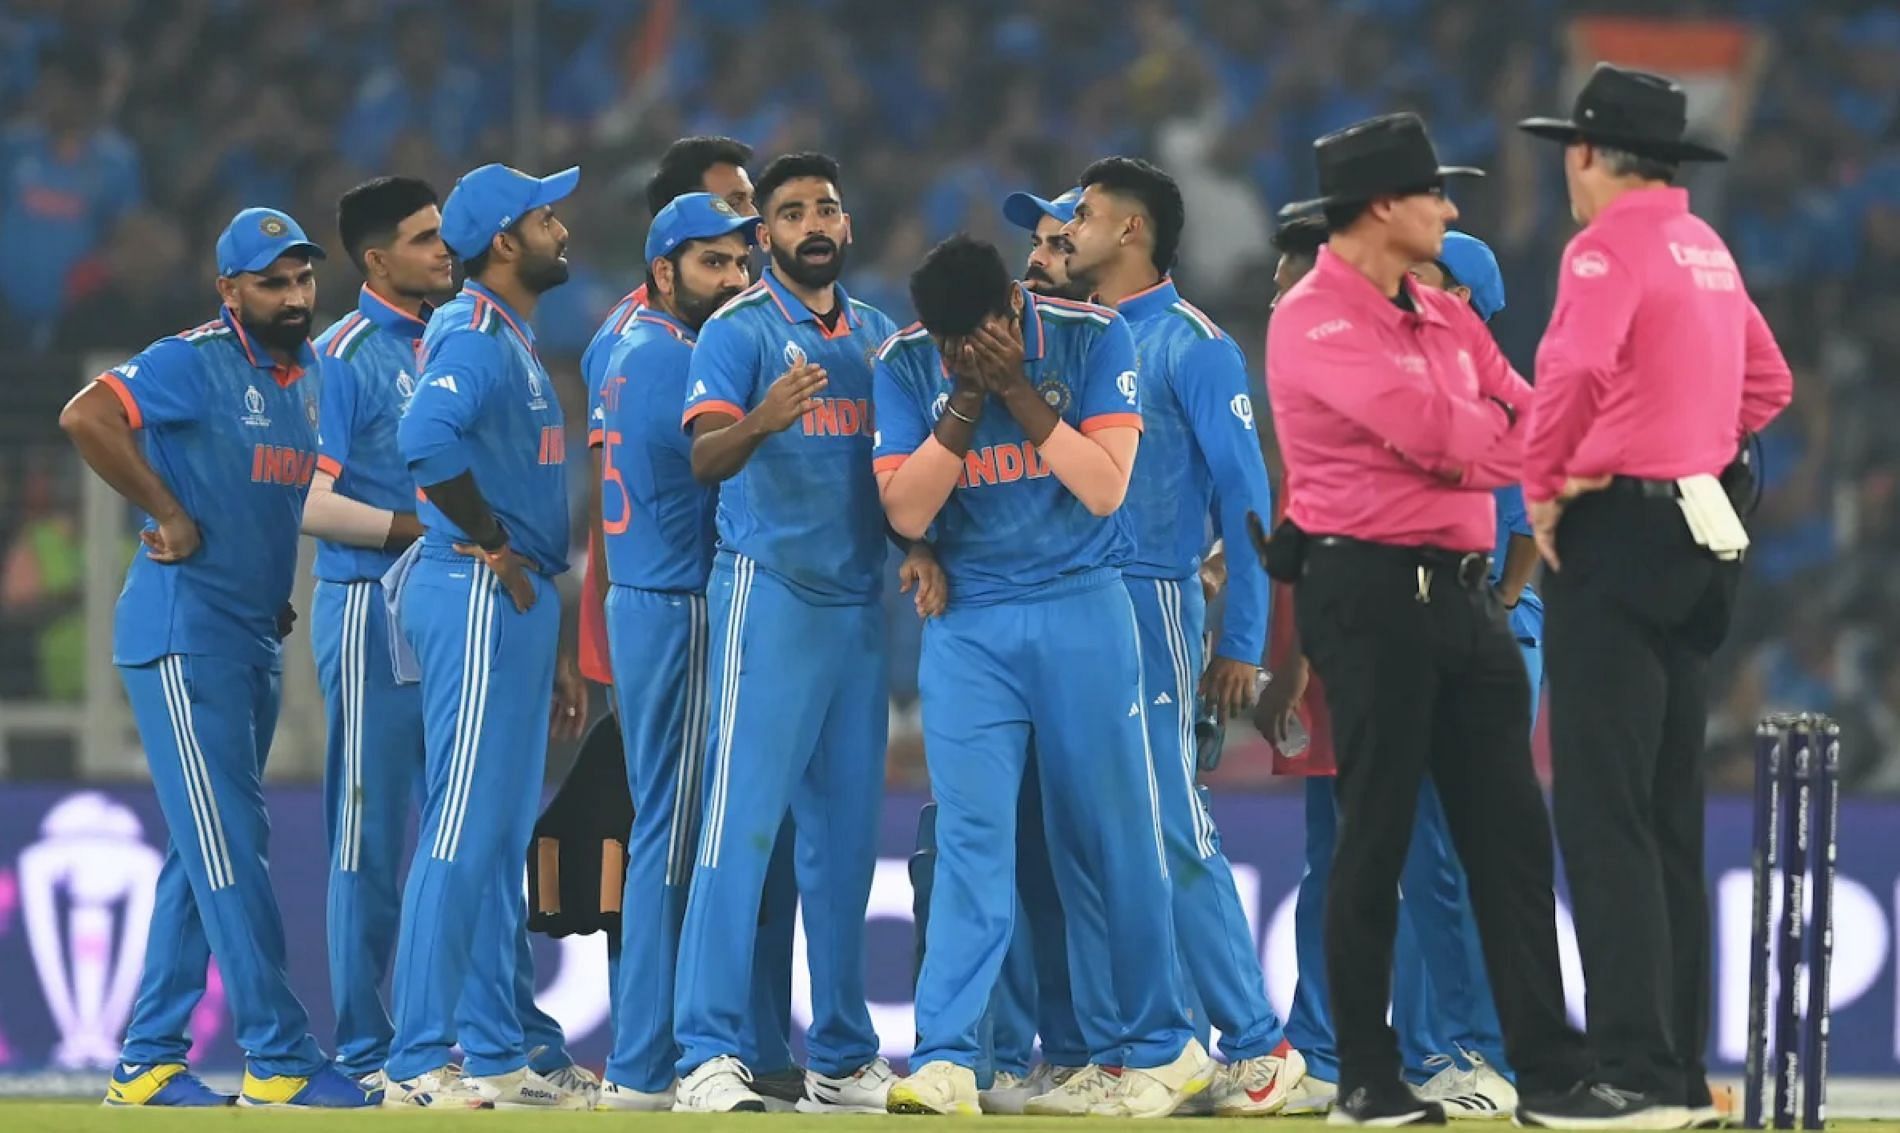 Team India stumbled on the biggest stage against Australia.